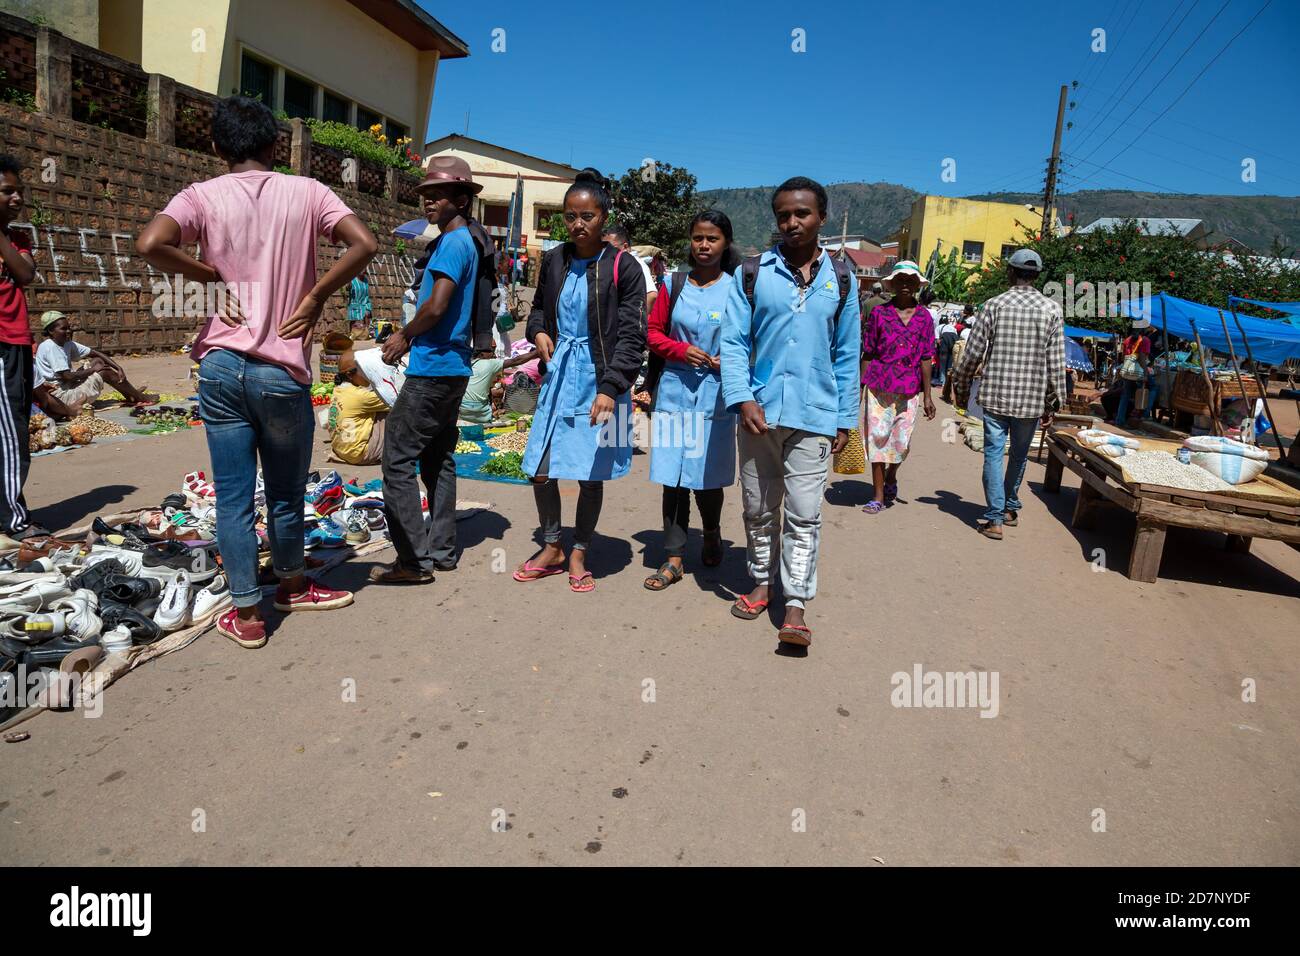 Éditorial. Une journée de marché avec de nombreux produits locaux sur l'île de Madagascar Banque D'Images